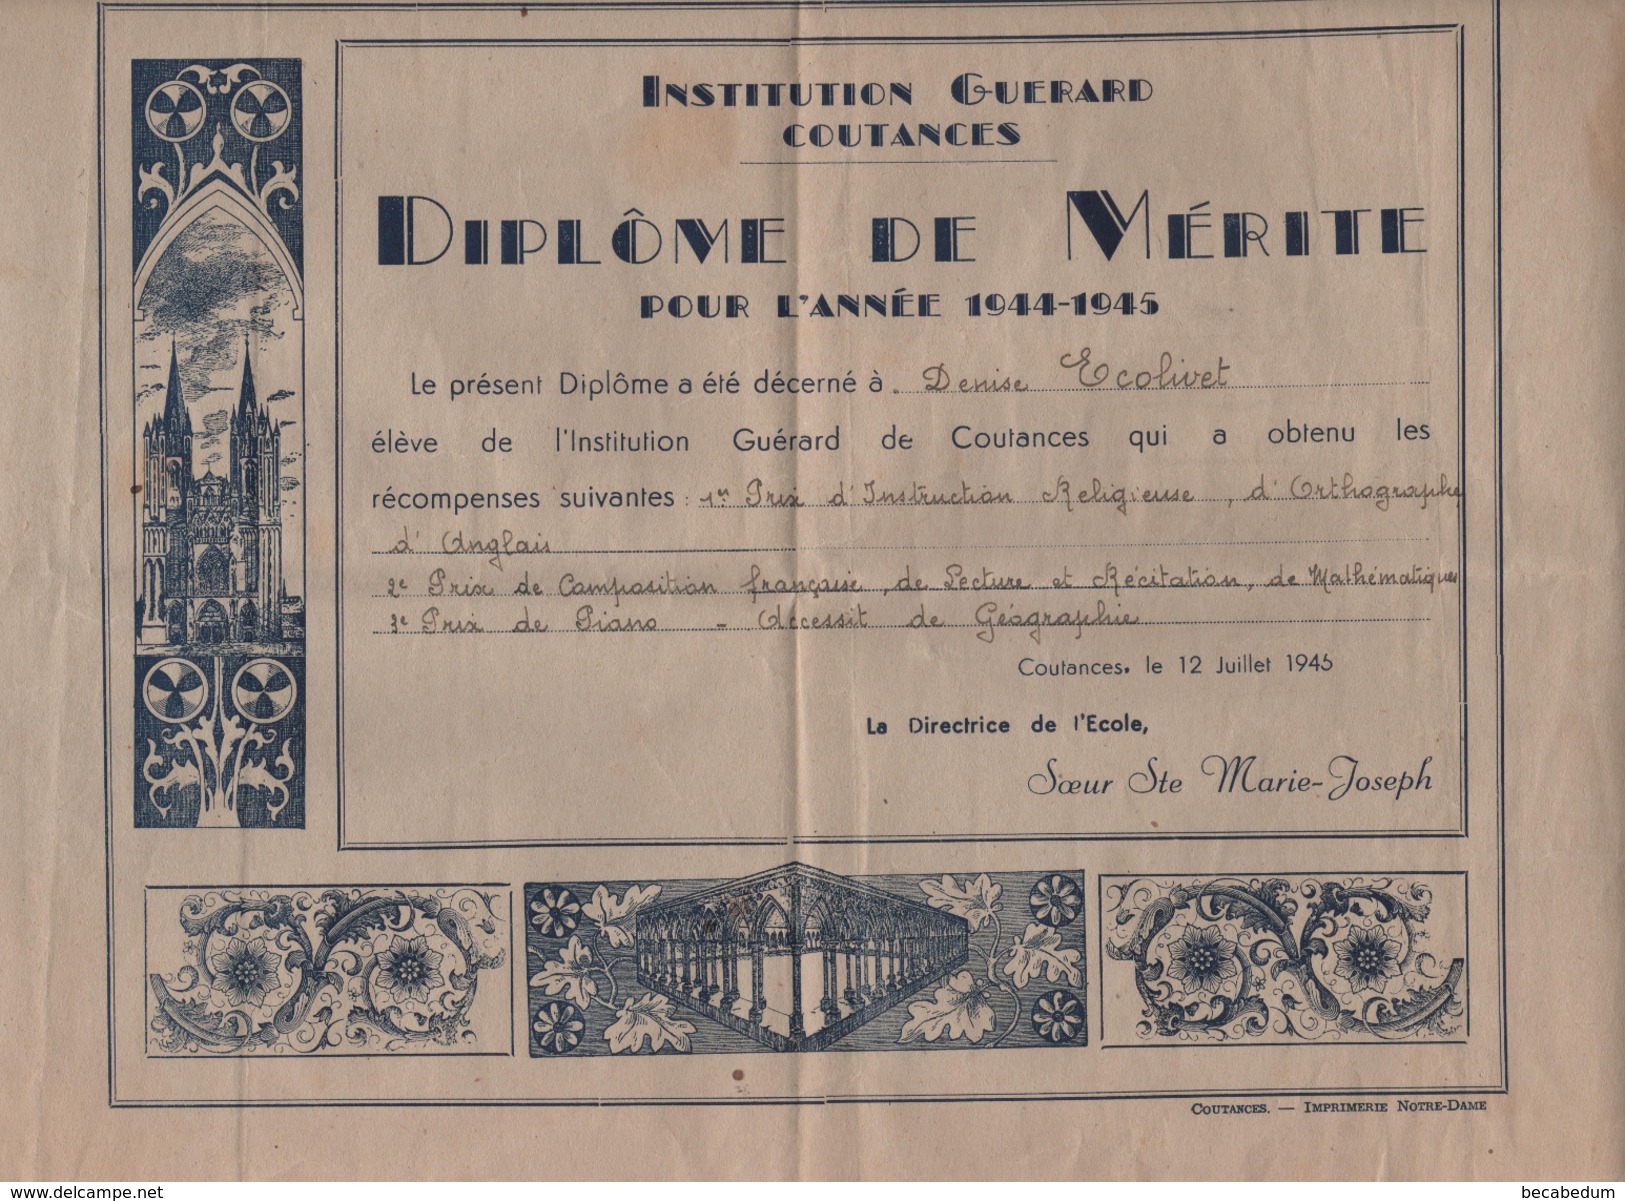 Institution Guérard Coutances Diplôme De Mérite 1944 1945 Soeur Marie Joseph  Ecolivet - Diplome Und Schulzeugnisse